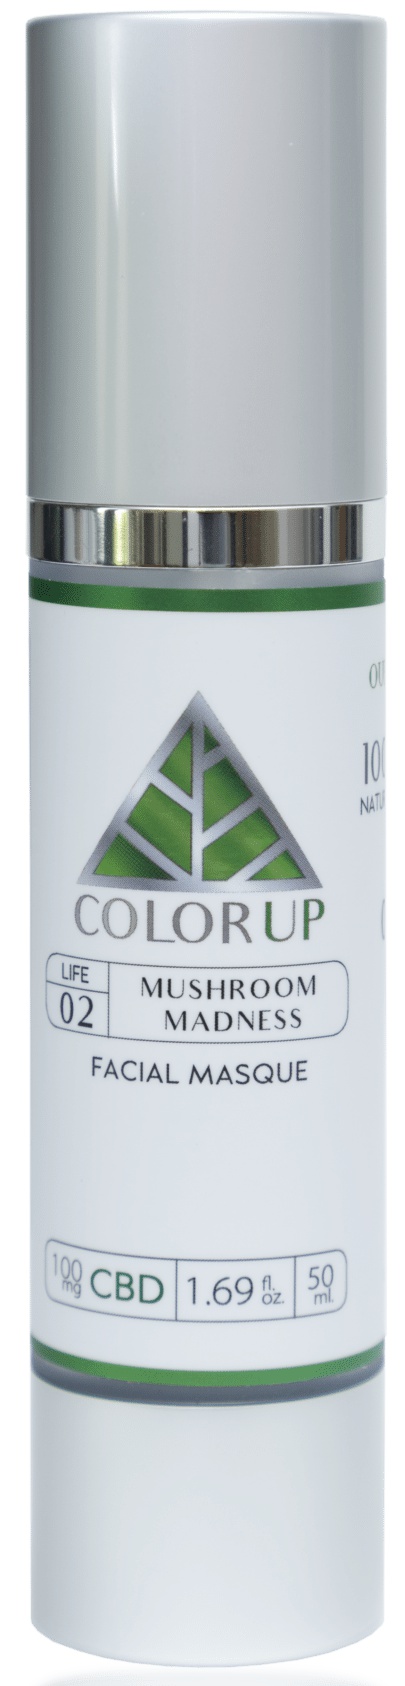 Color Up Mushroom Madness Facial Masque